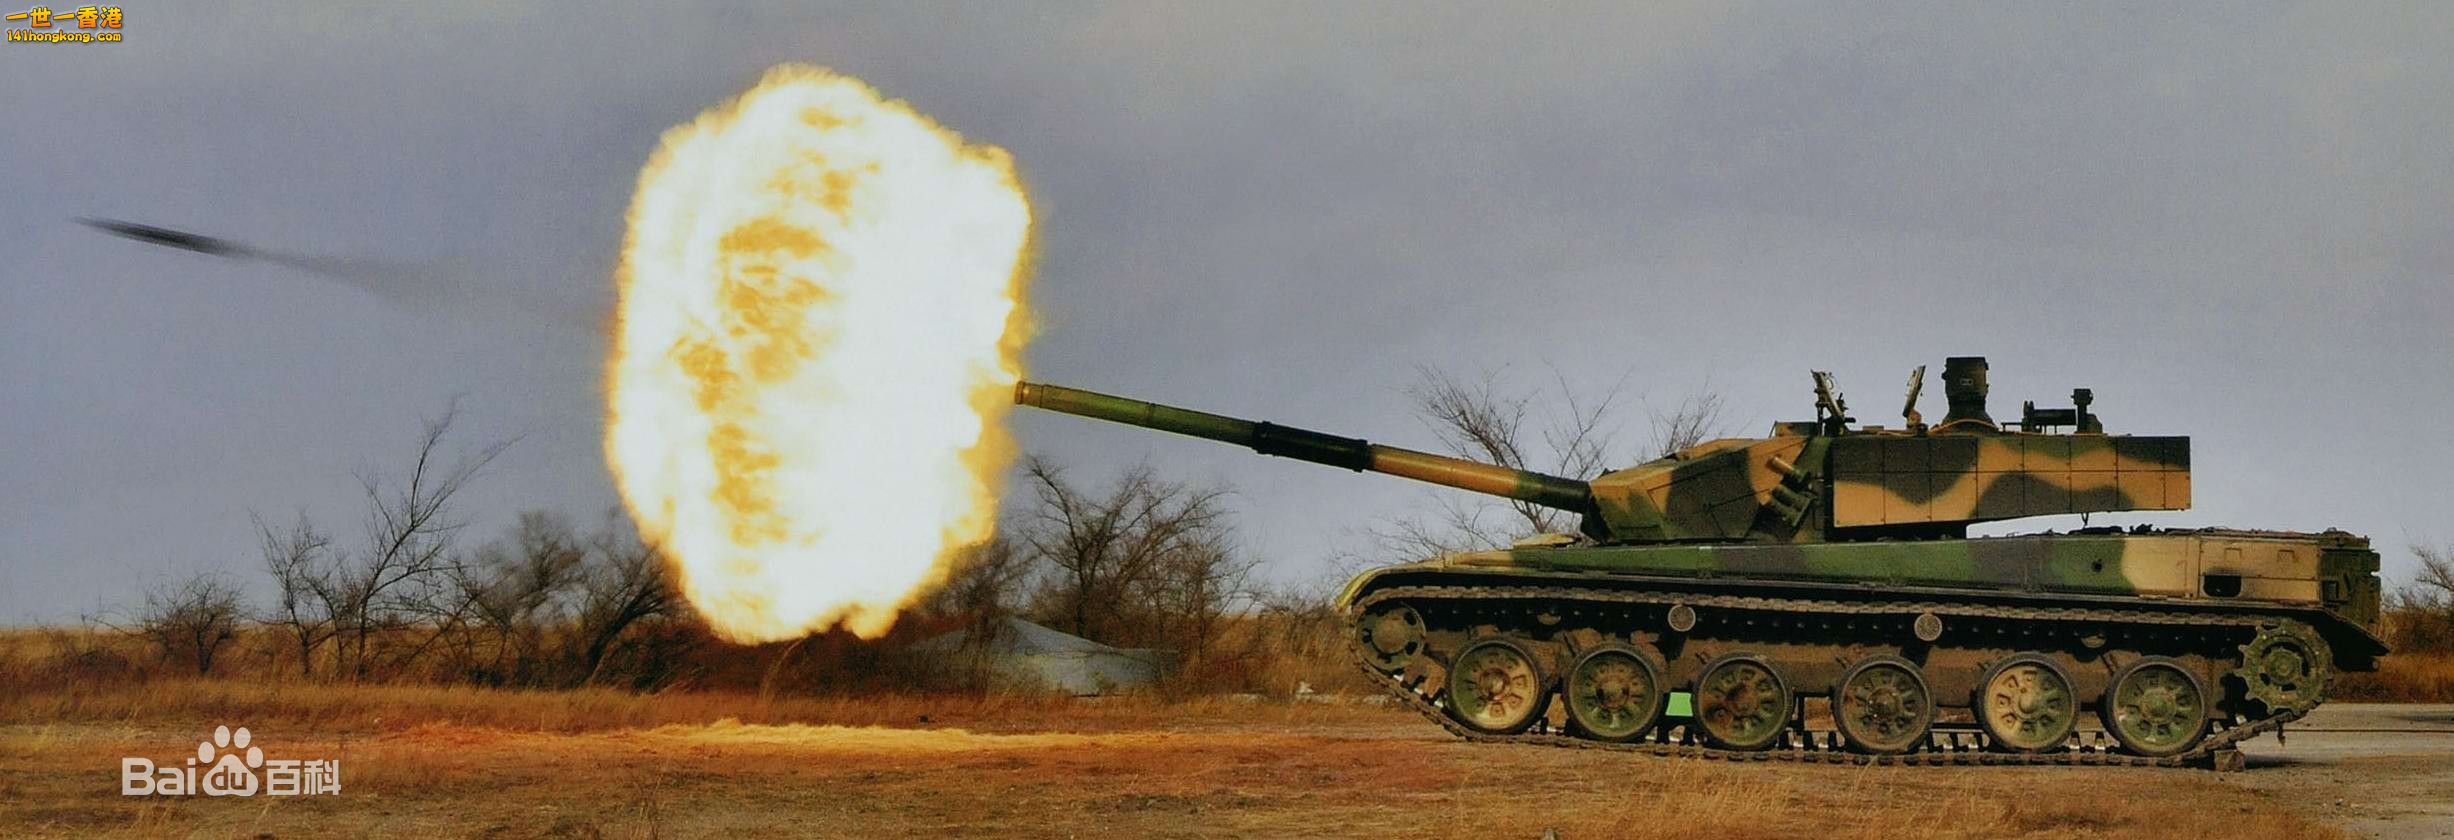 99A2型主战坦克开火瞬间.jpg